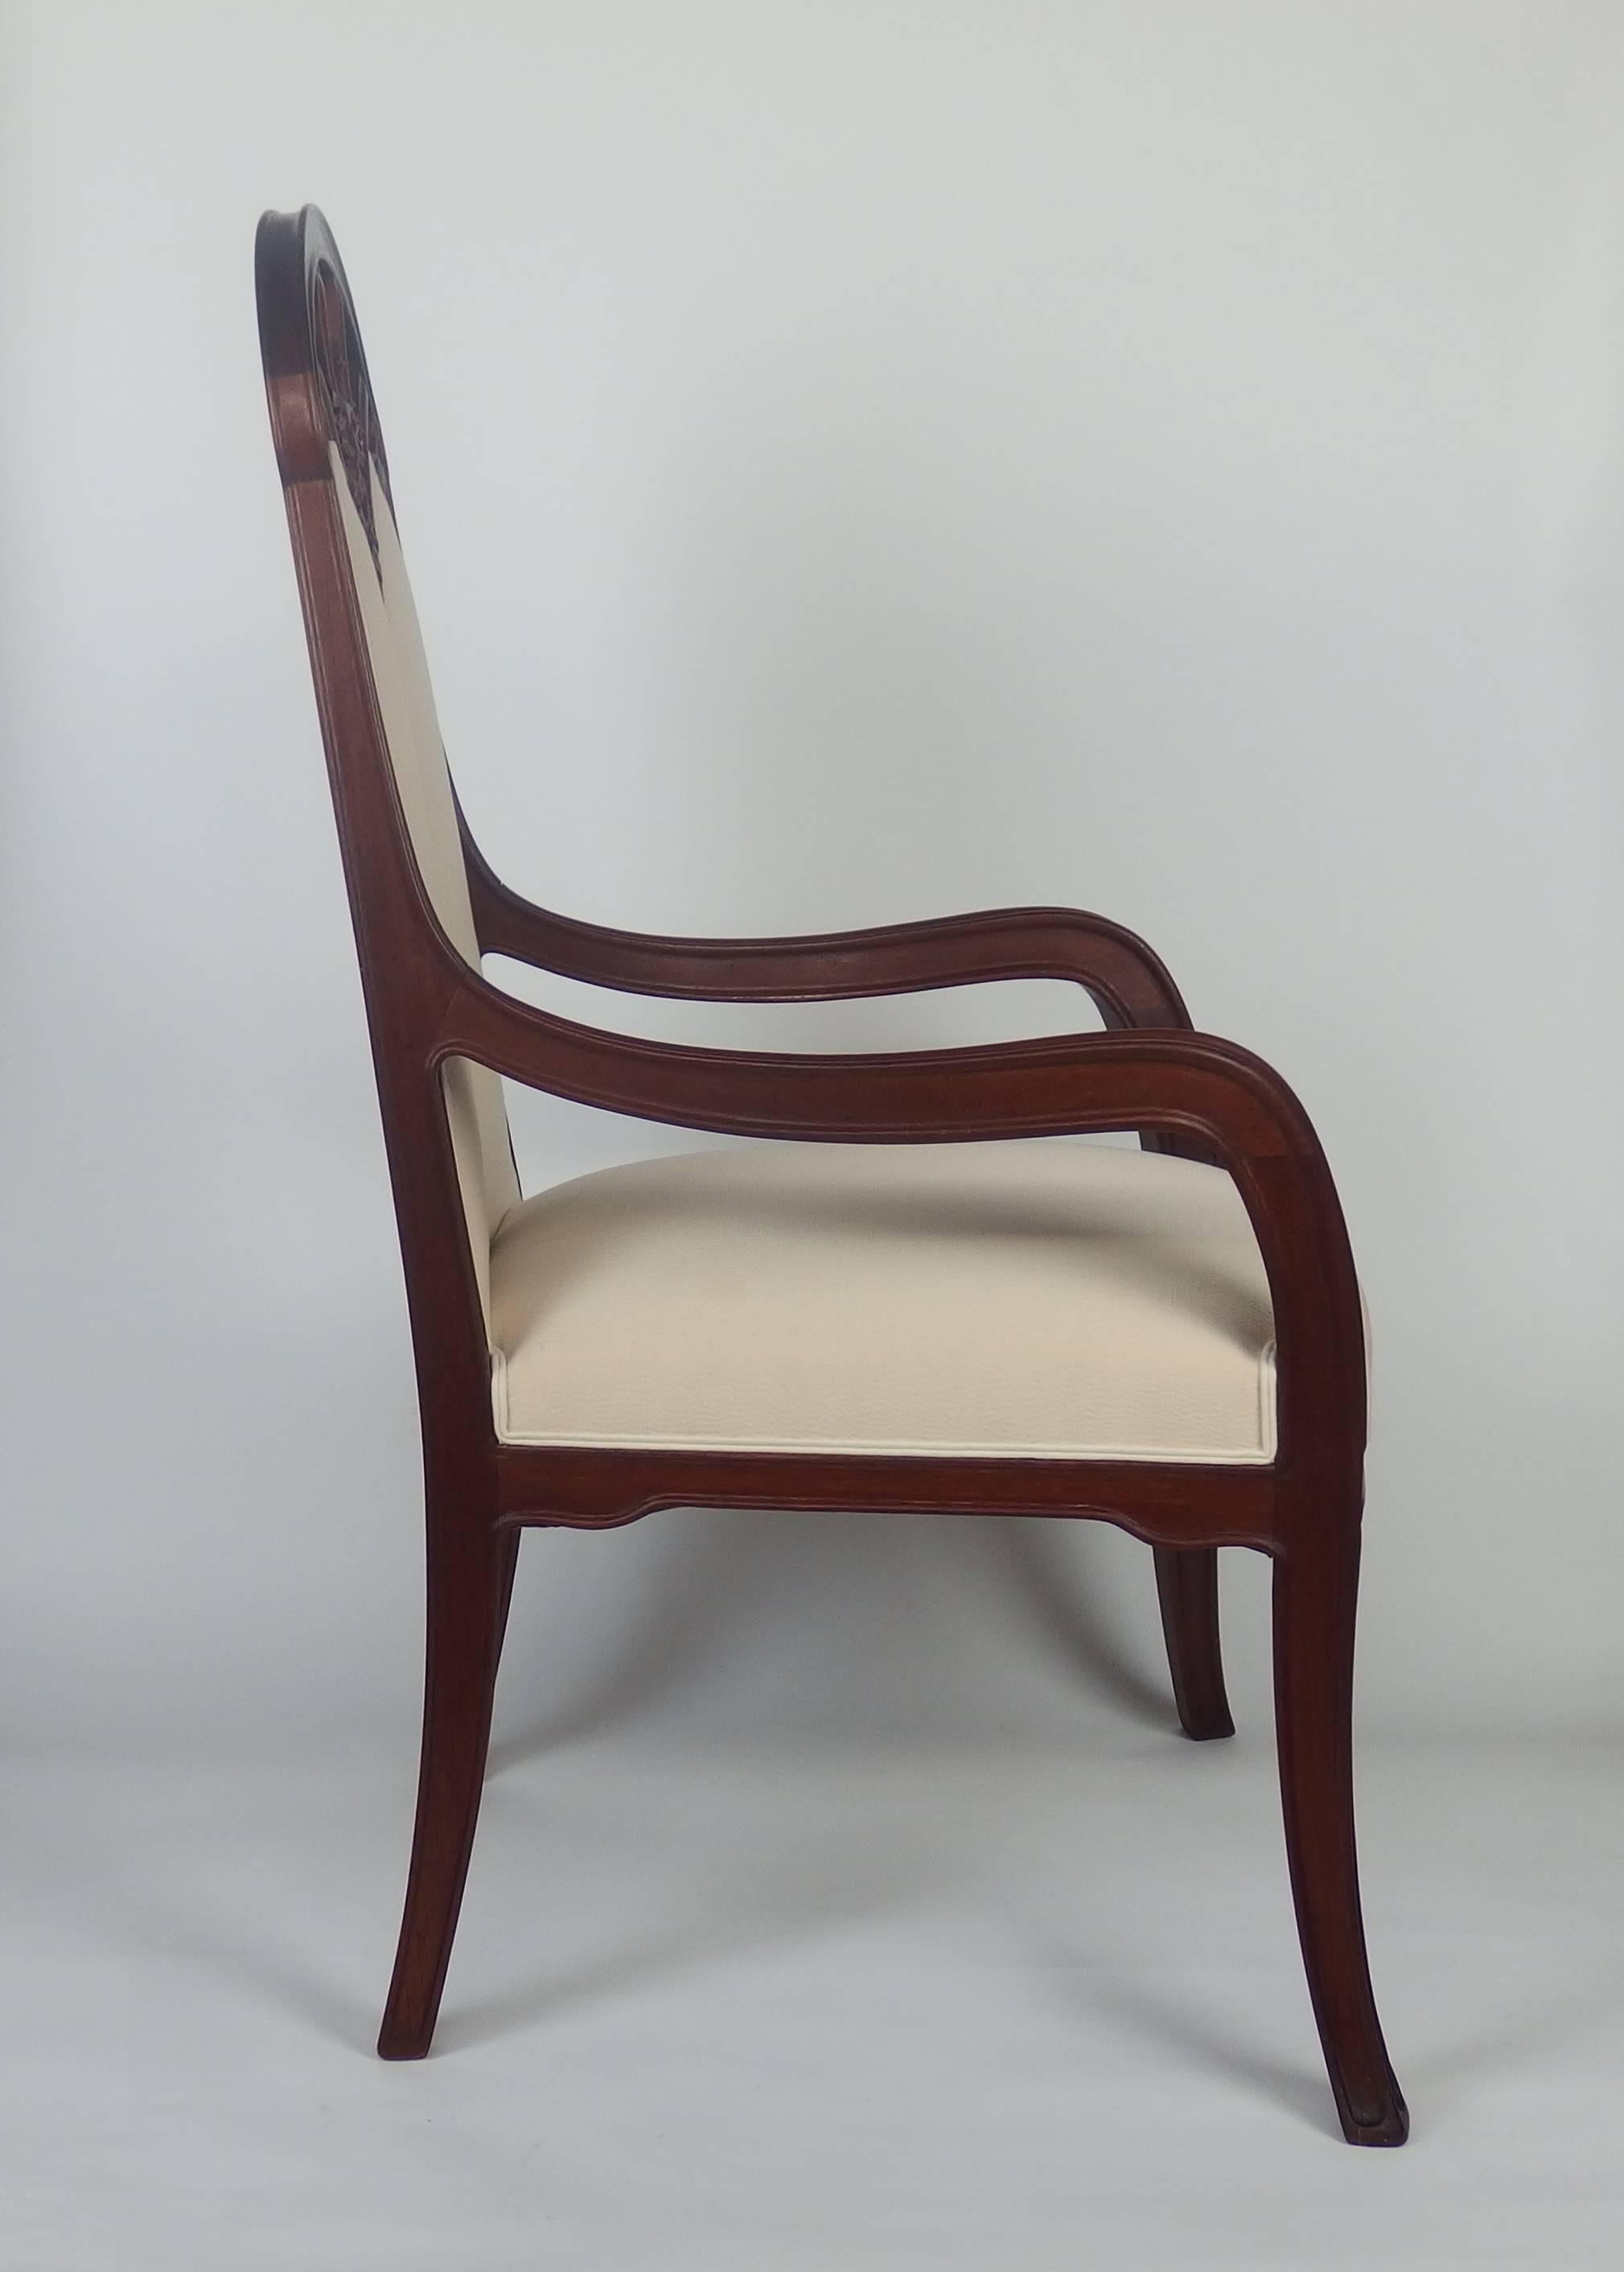 Carved Art Nouveau Armchair by Majorelle